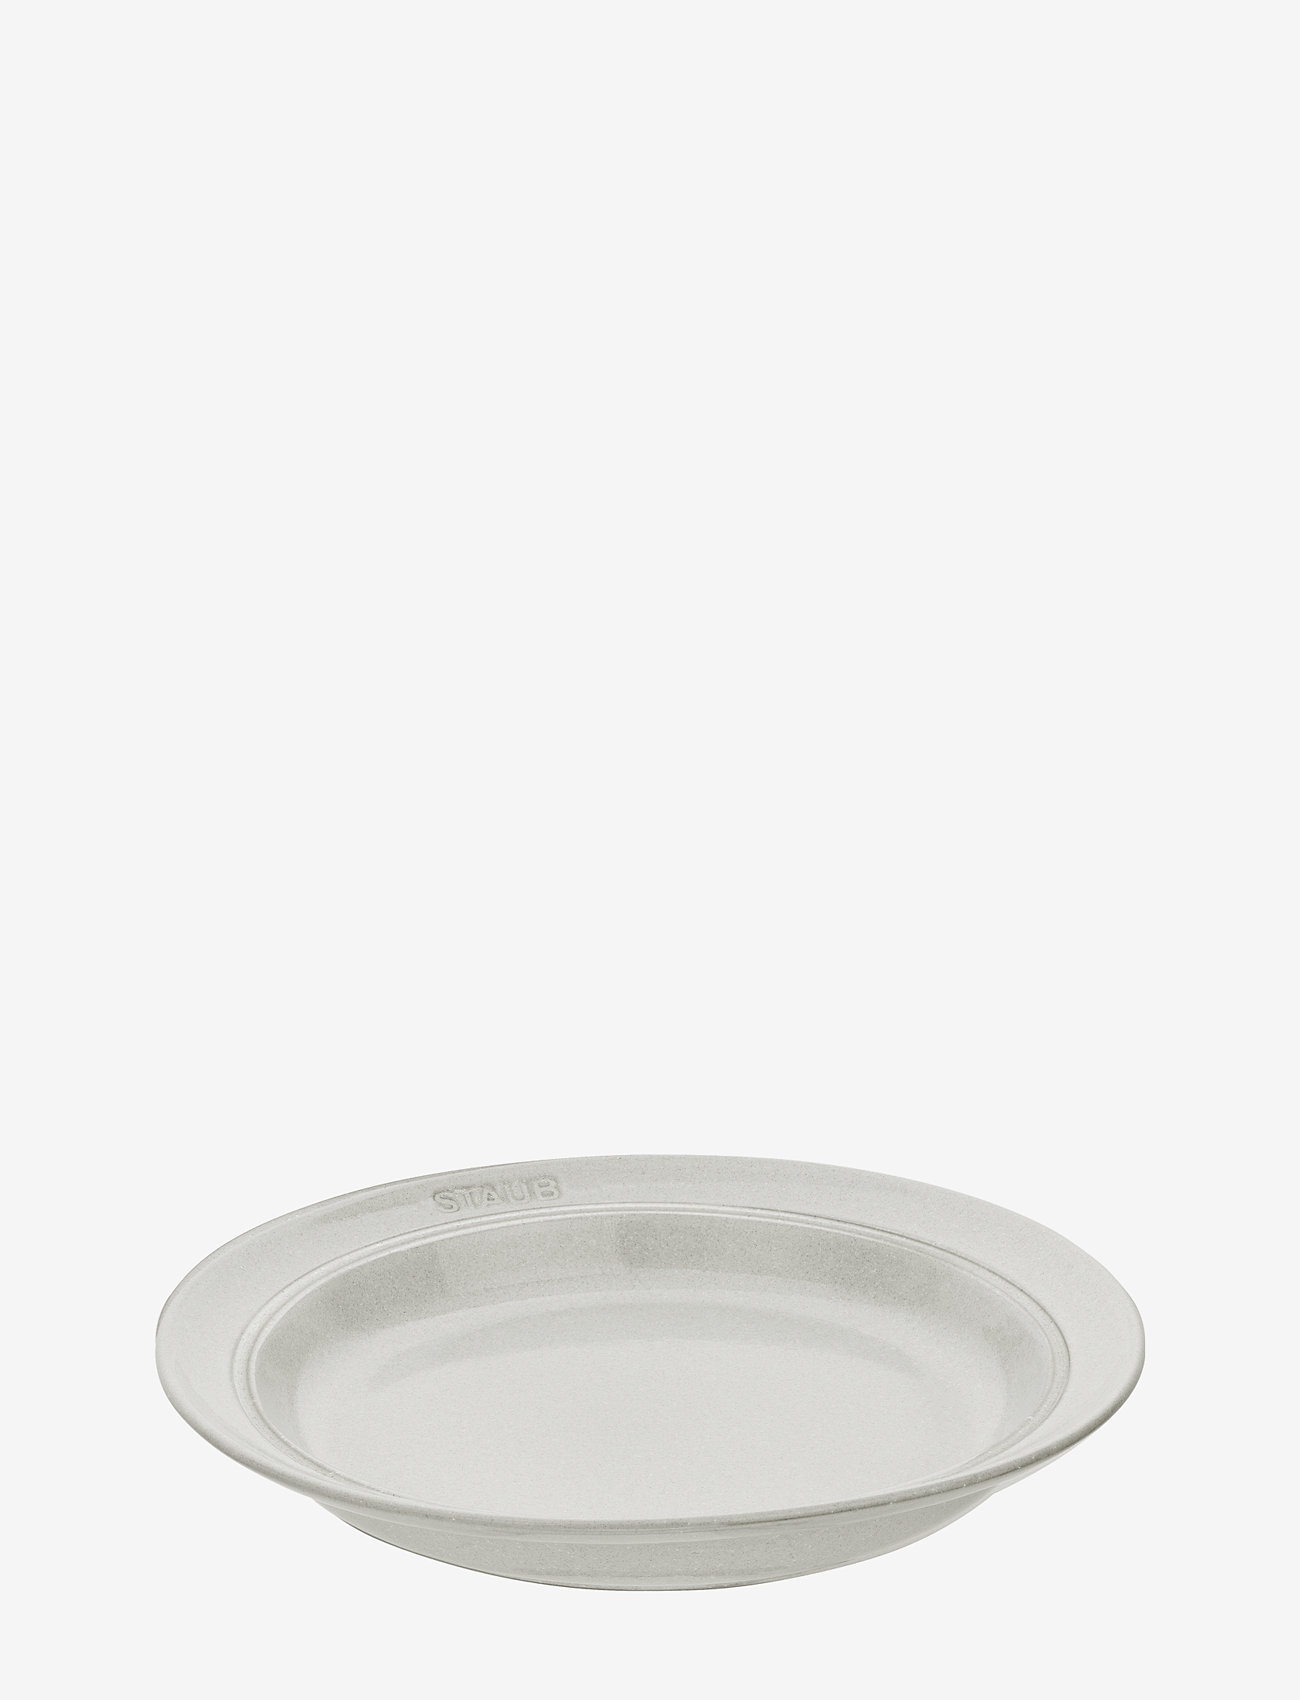 STAUB - Lautas 22 cm, valkoinen tryffeli - alhaisimmat hinnat - grey - 0